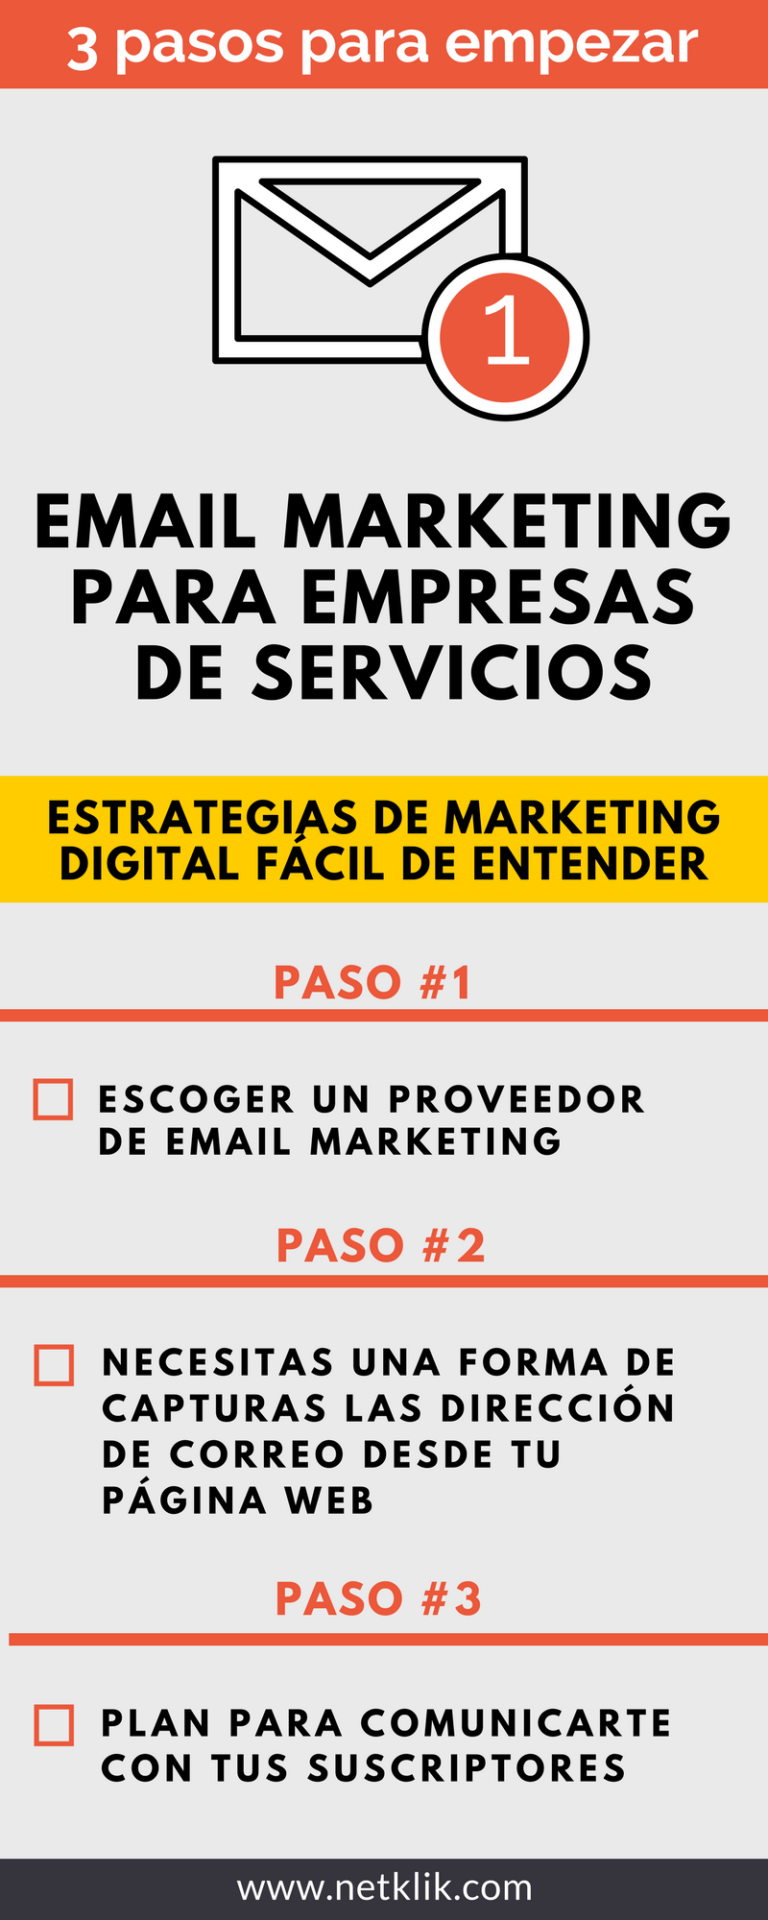 Email Marketing Para Empresas De Servicios 3 Pasos Para Empezar Cómo Aumentar La Visibilidad 2724